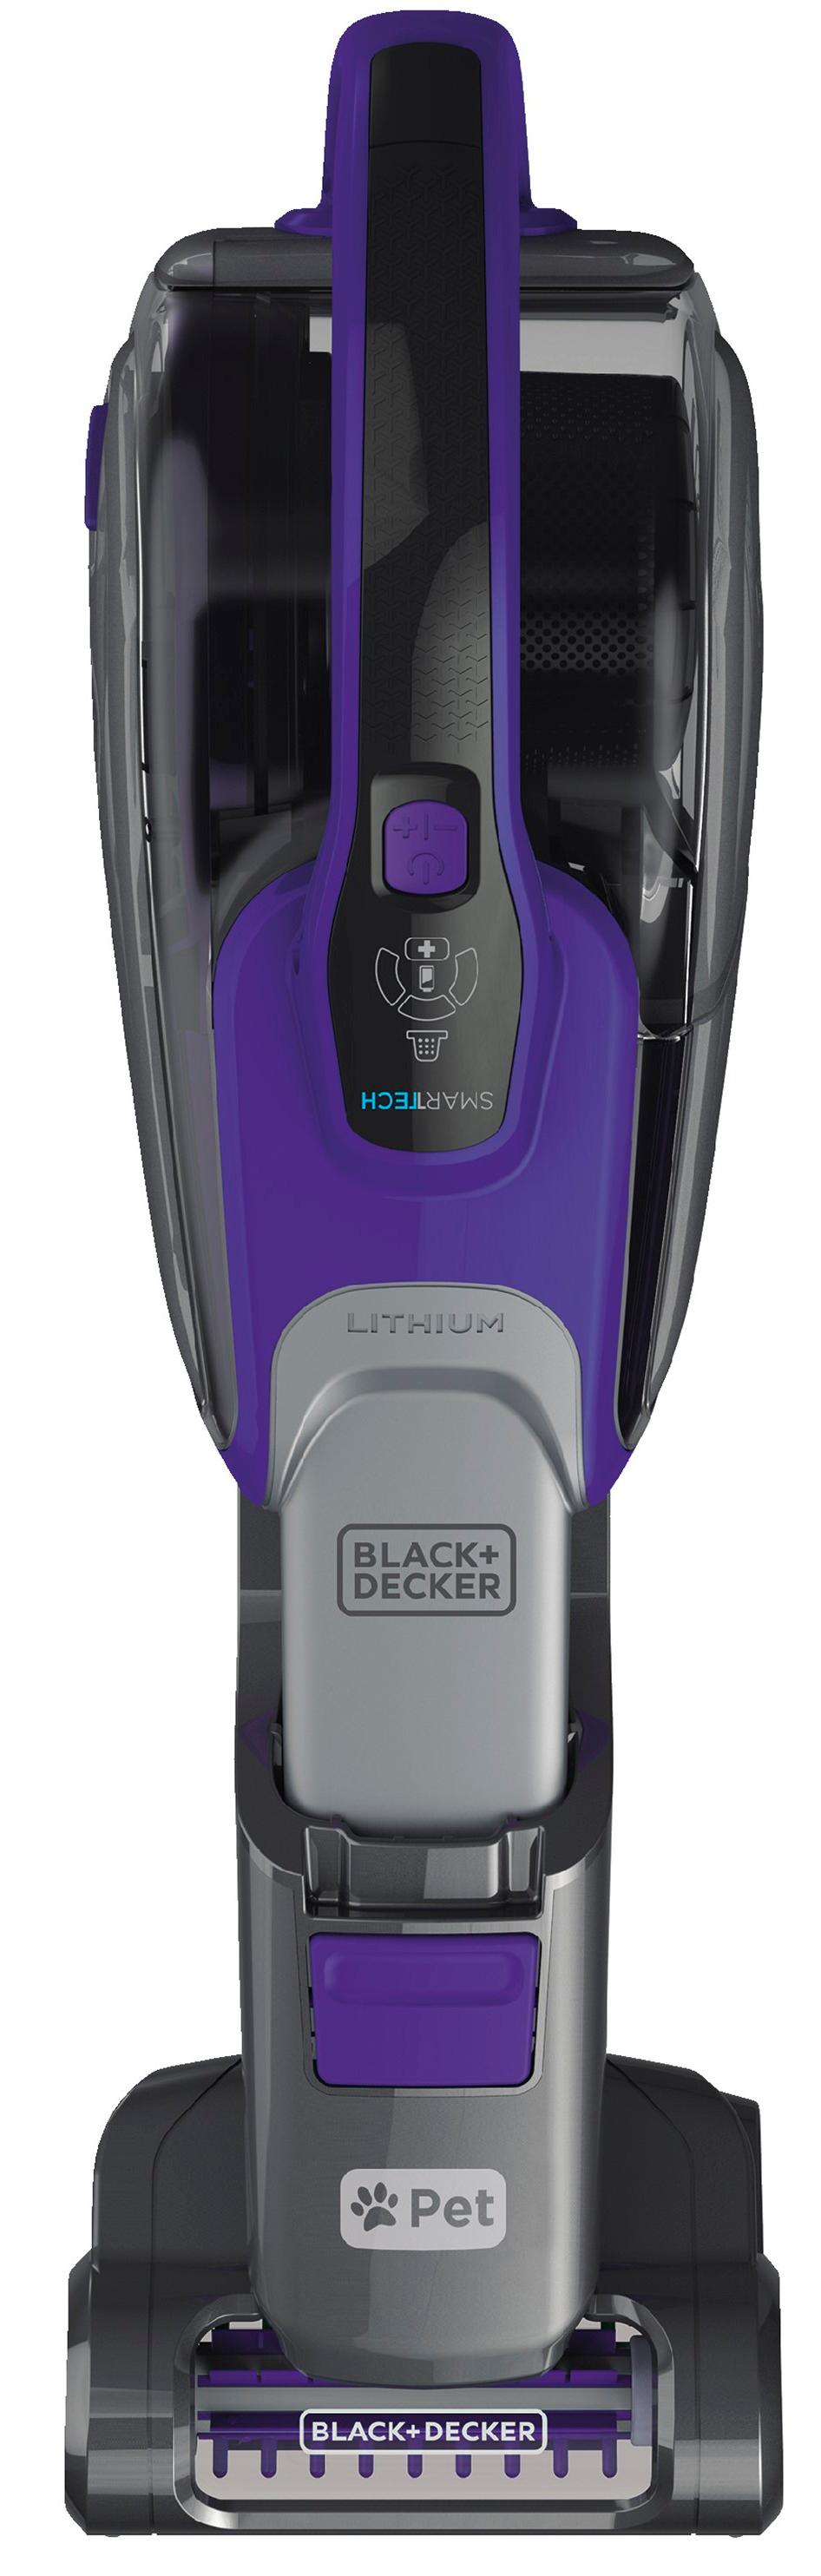 Black & Decker SmartTech Vacuum - Tools in Action